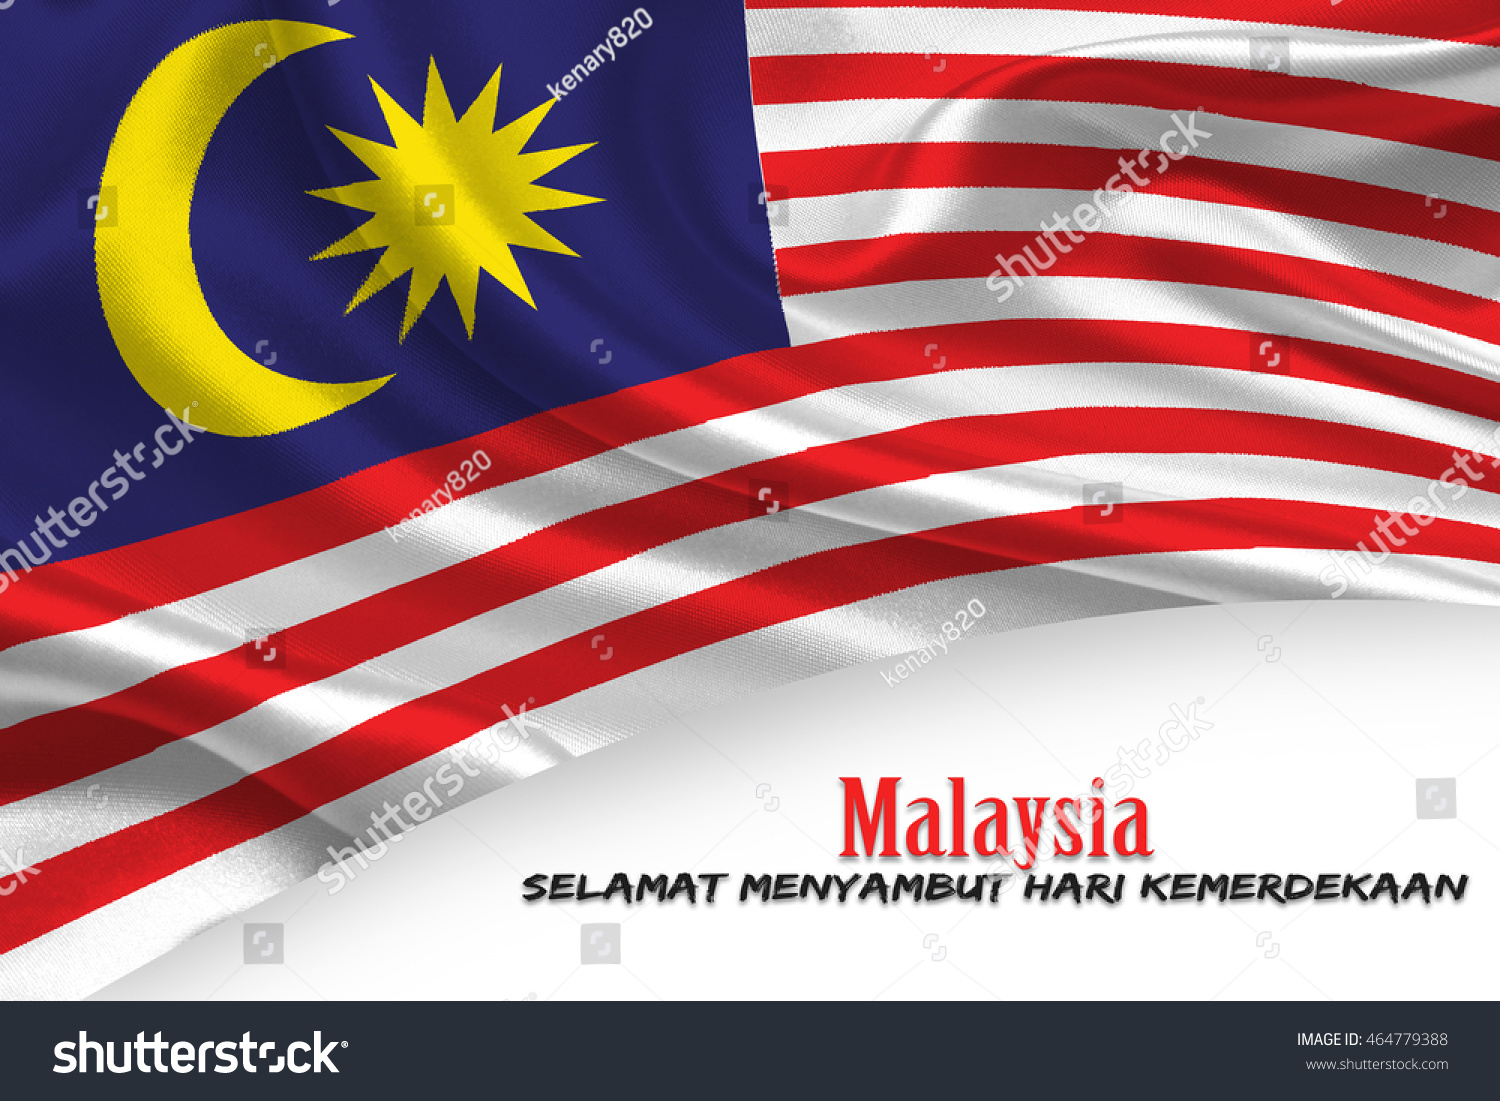 Malaysia Selamat Menyambut Hari Kemerdekaan Selamat Stock Illustration 464779388